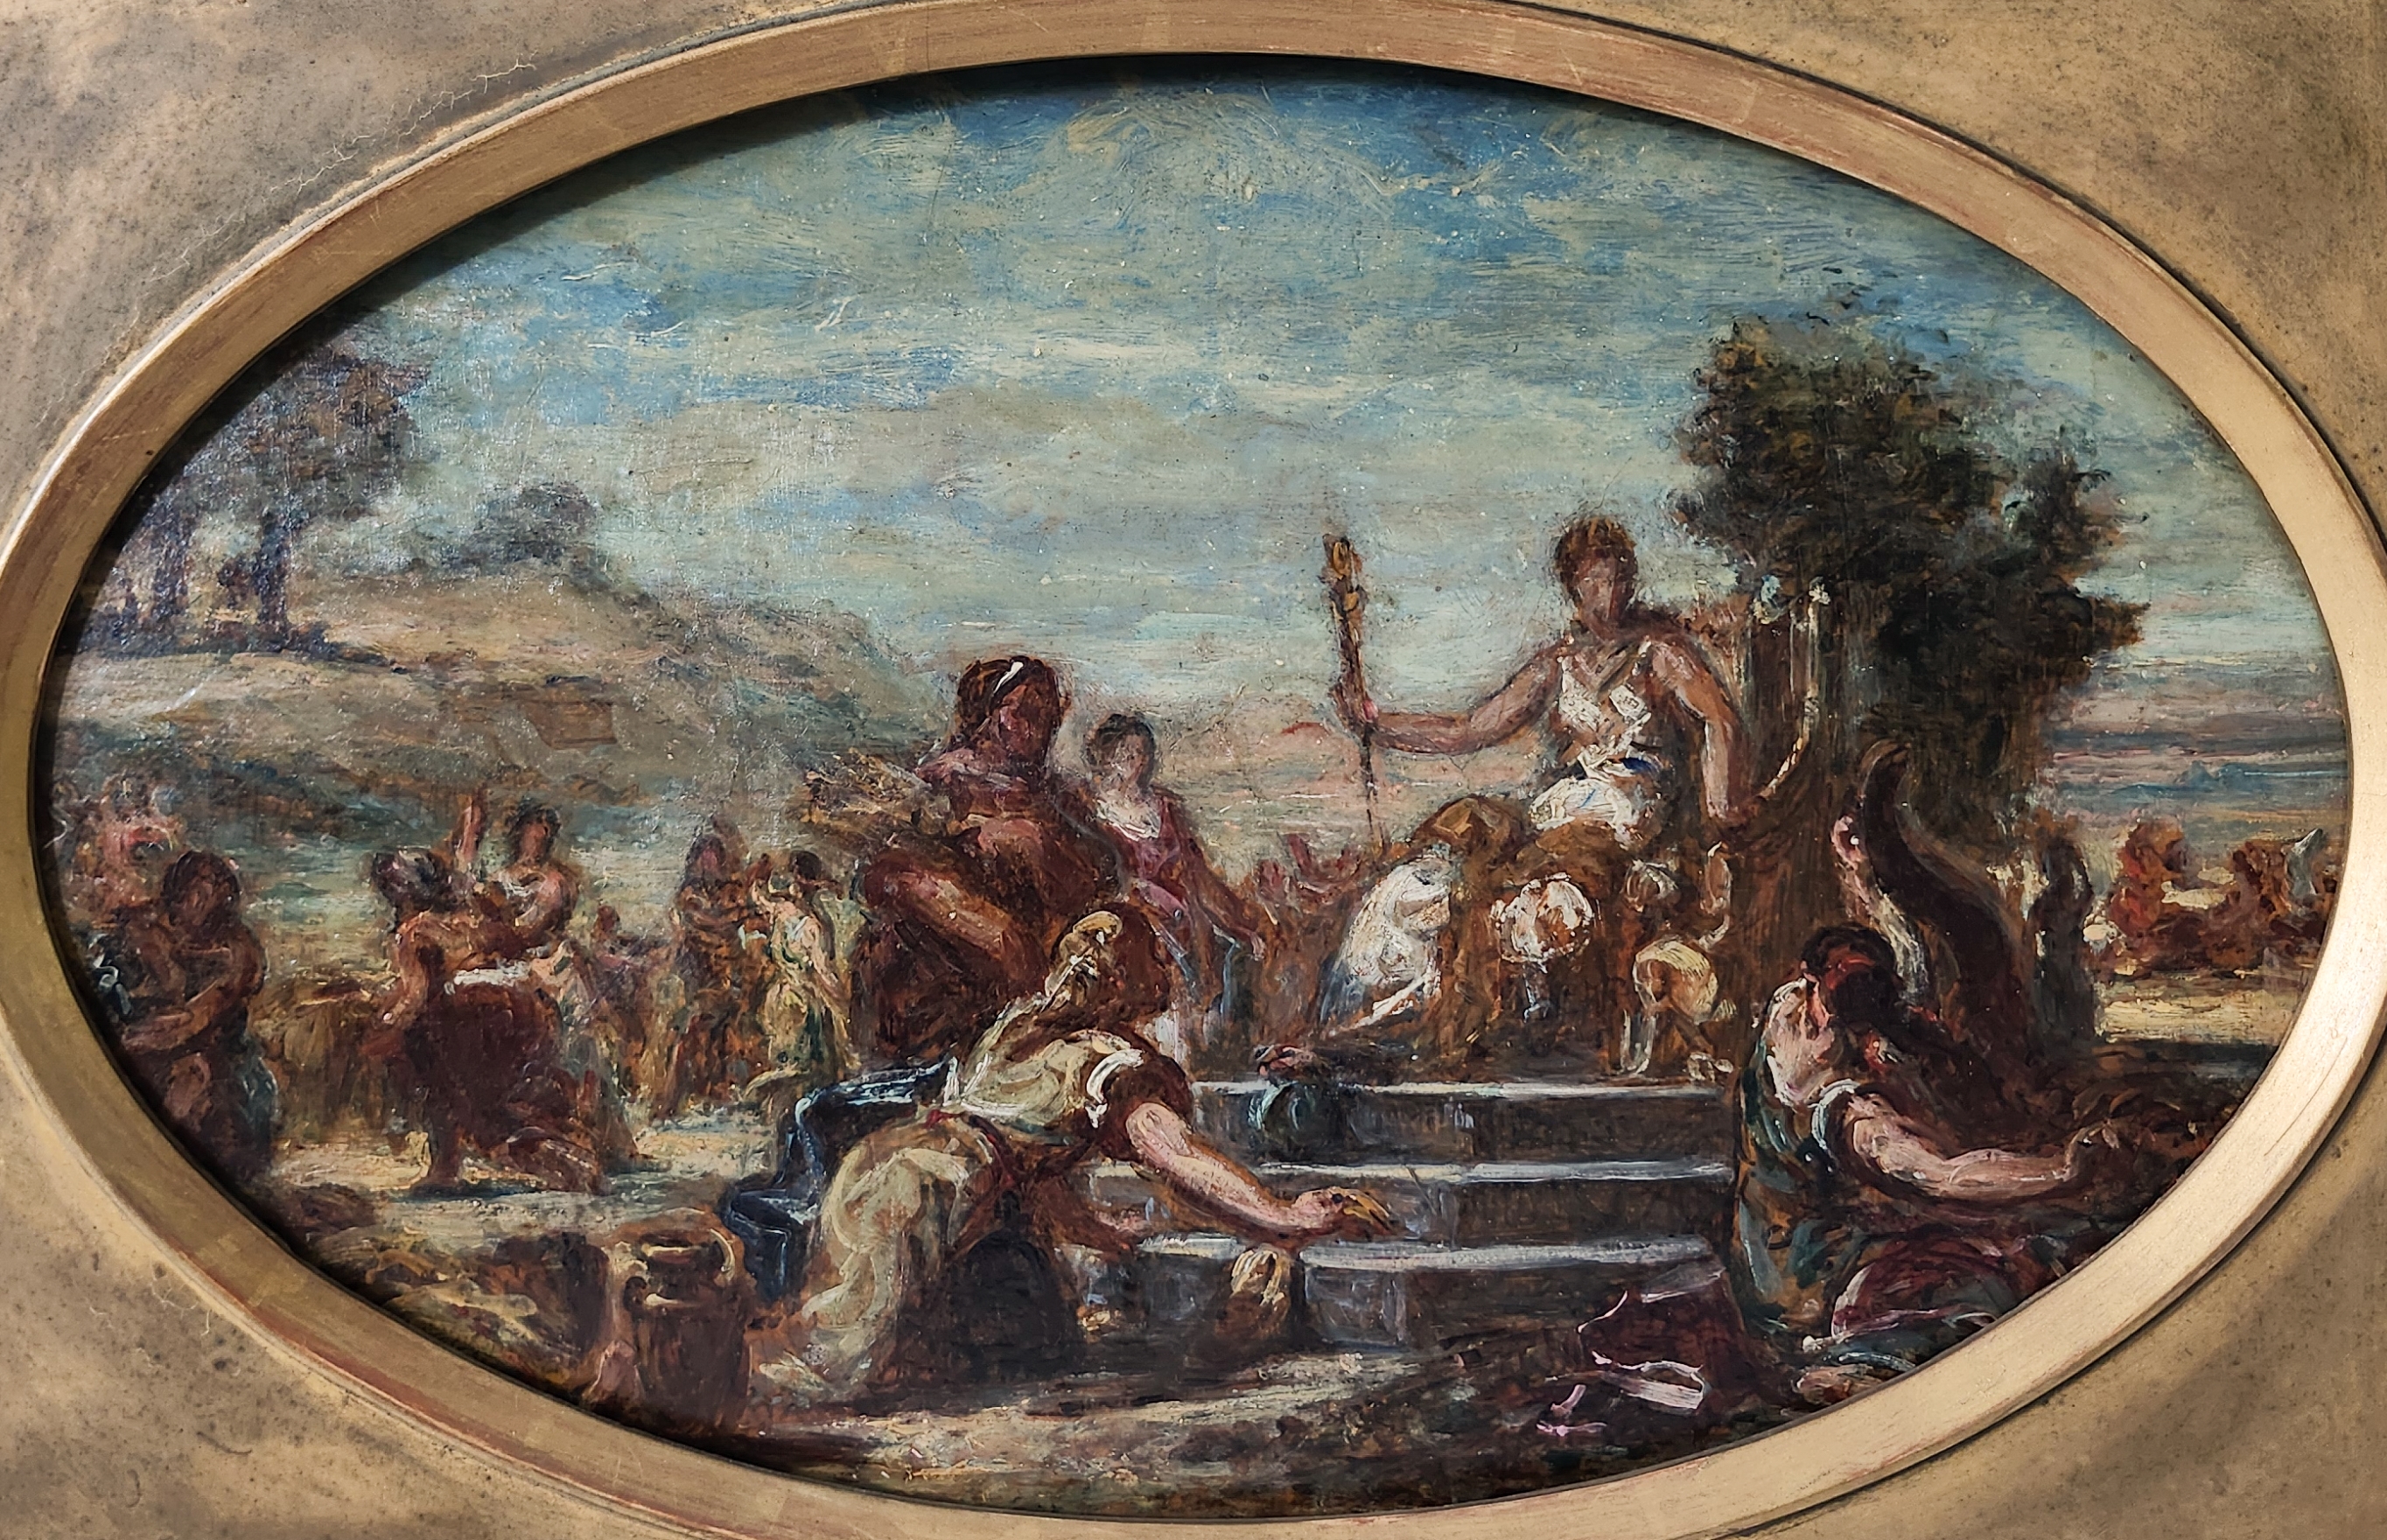 Delacroix, Eugène - Scène mythologique - Eugène Delacroix